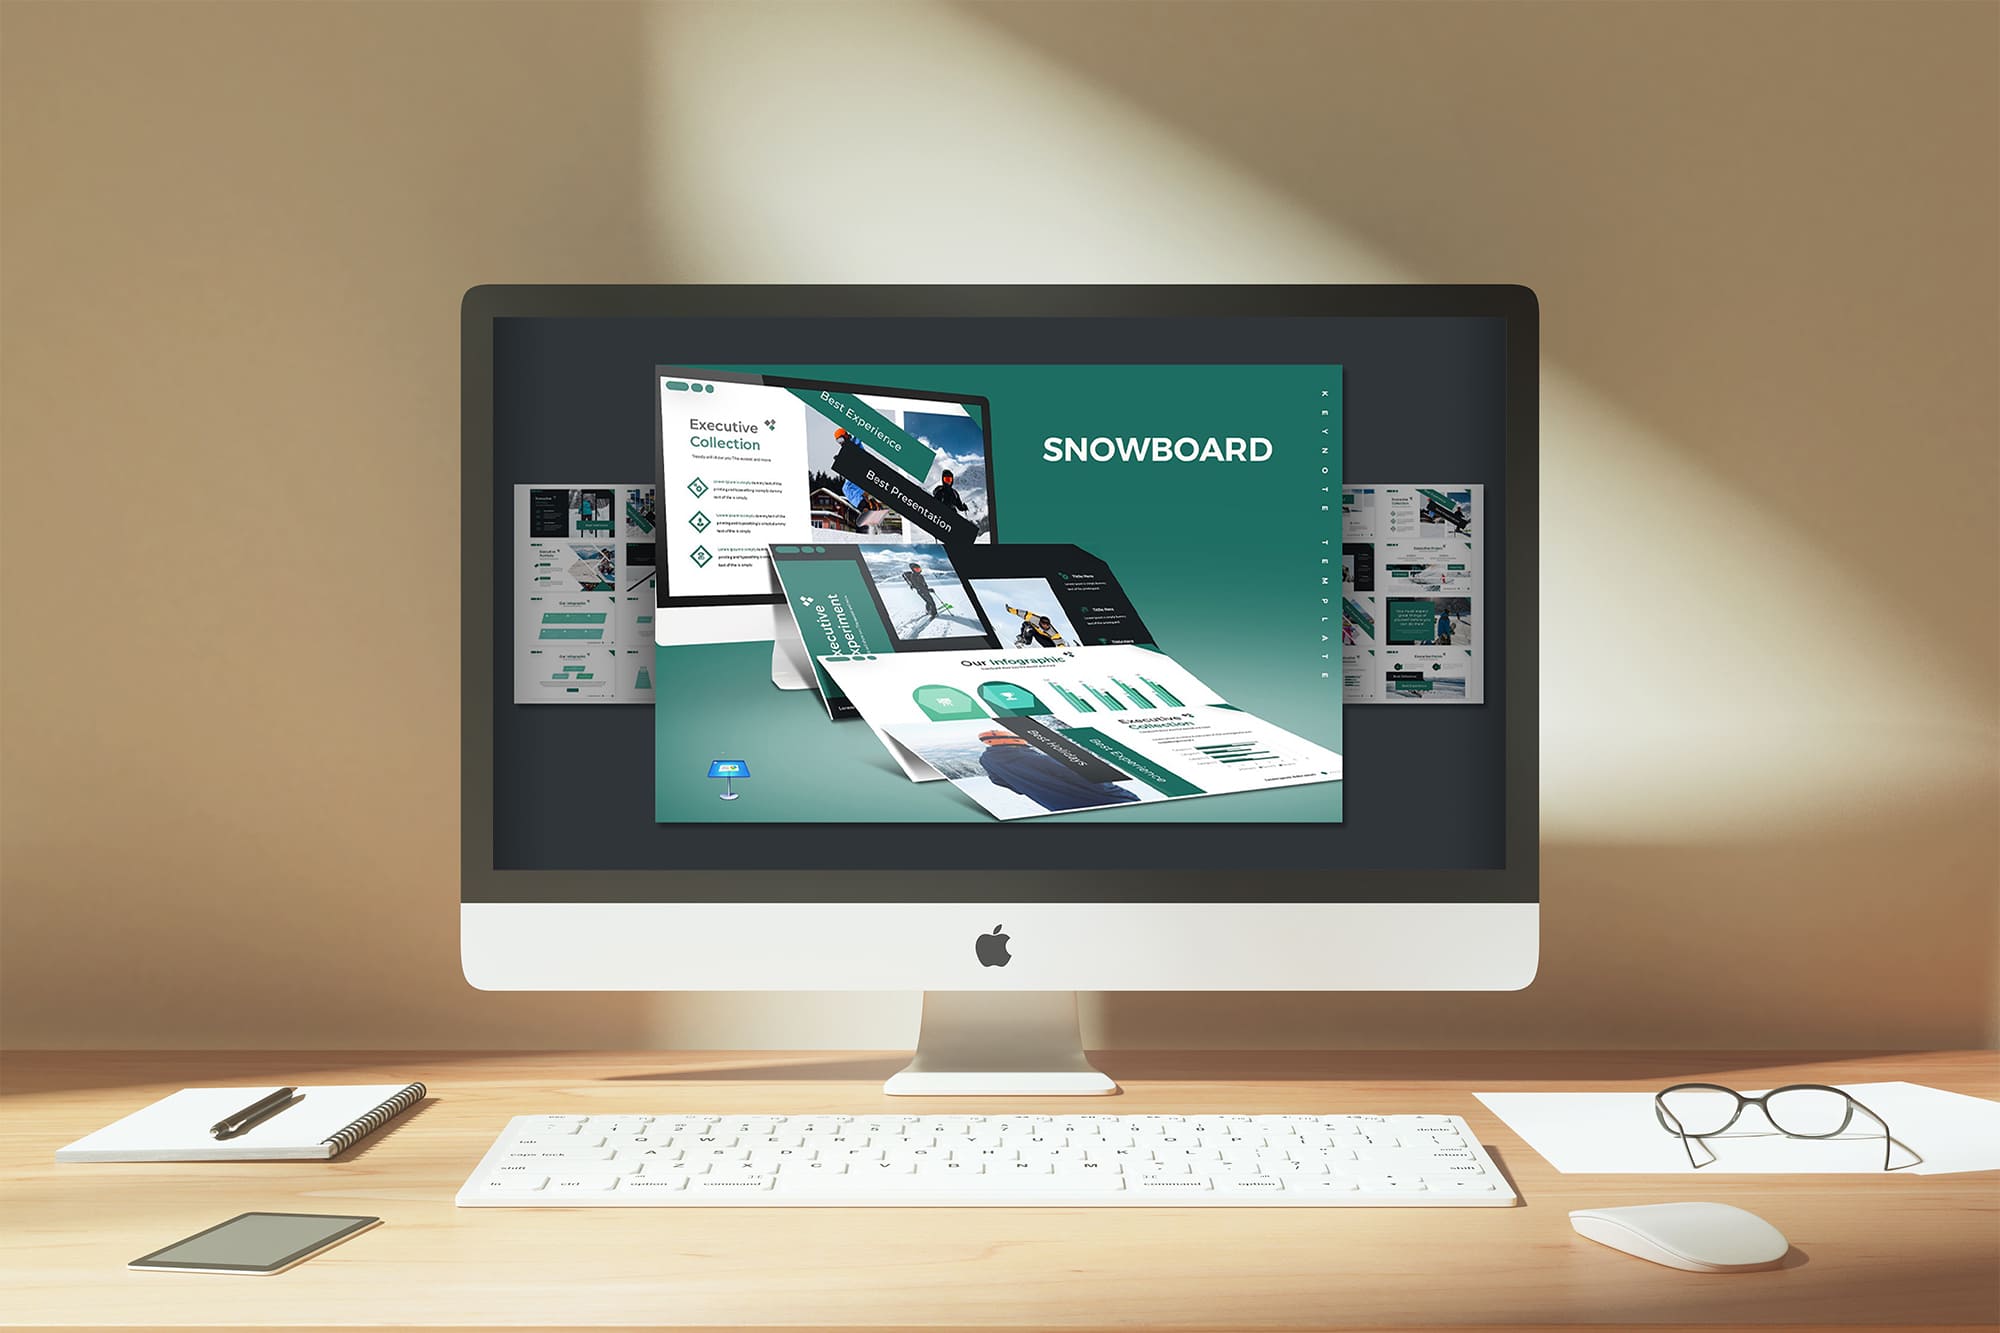 Snowboard - Keynote Template on Desktop.